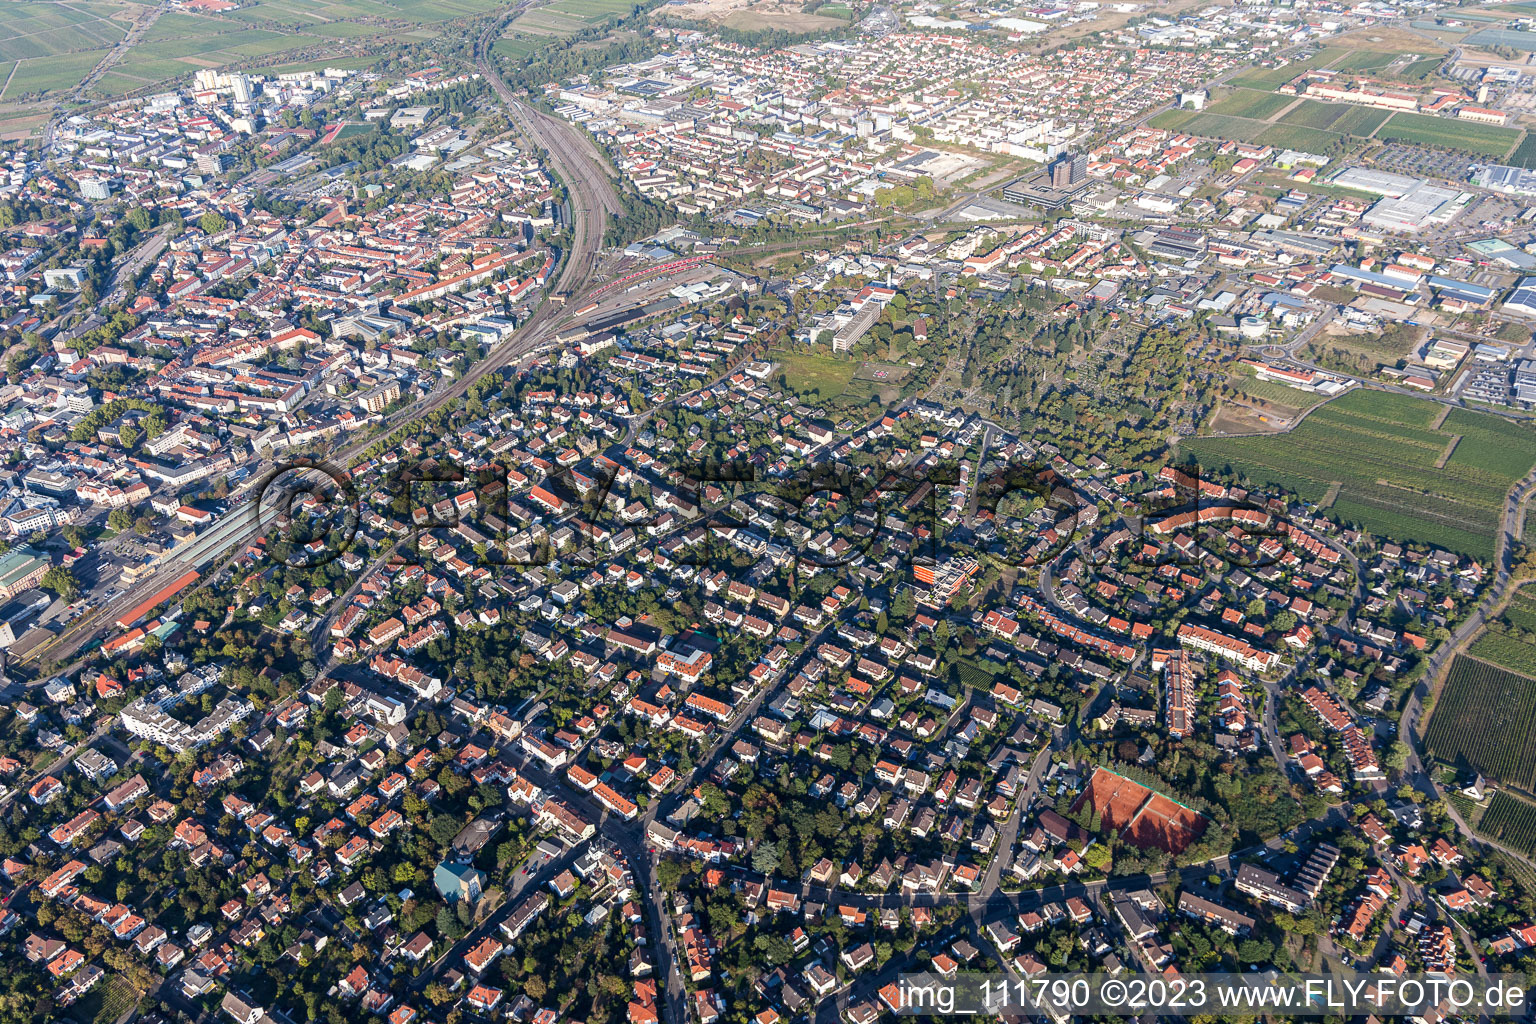 Neustadt an der Weinstraße im Bundesland Rheinland-Pfalz, Deutschland aus der Drohnenperspektive